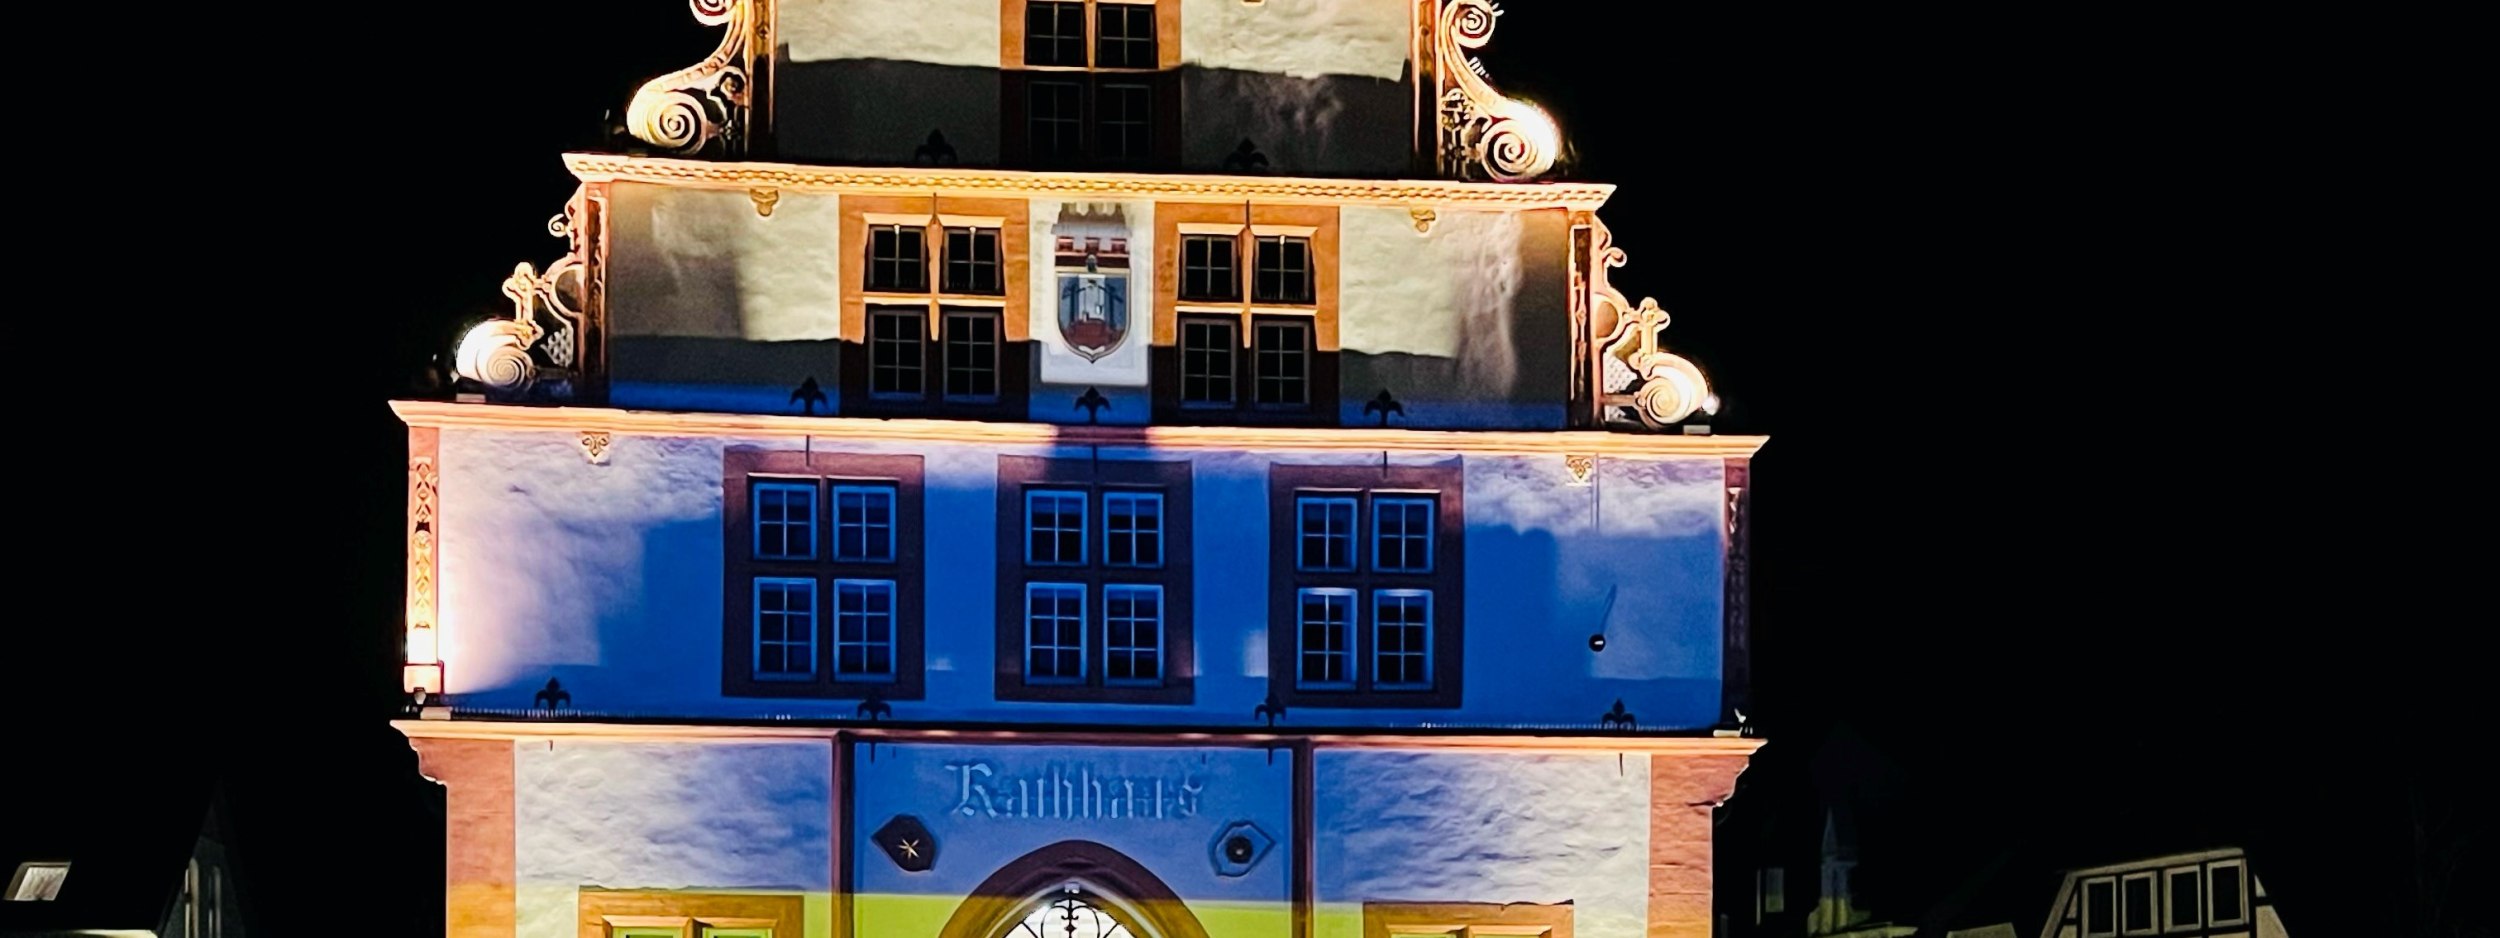 Das historische Rathaus der Stadt Bad Salzuflen erstrahlt in den Farben der ukrainischen Flagge., © Niklas Müller/Spark-Vat.de 